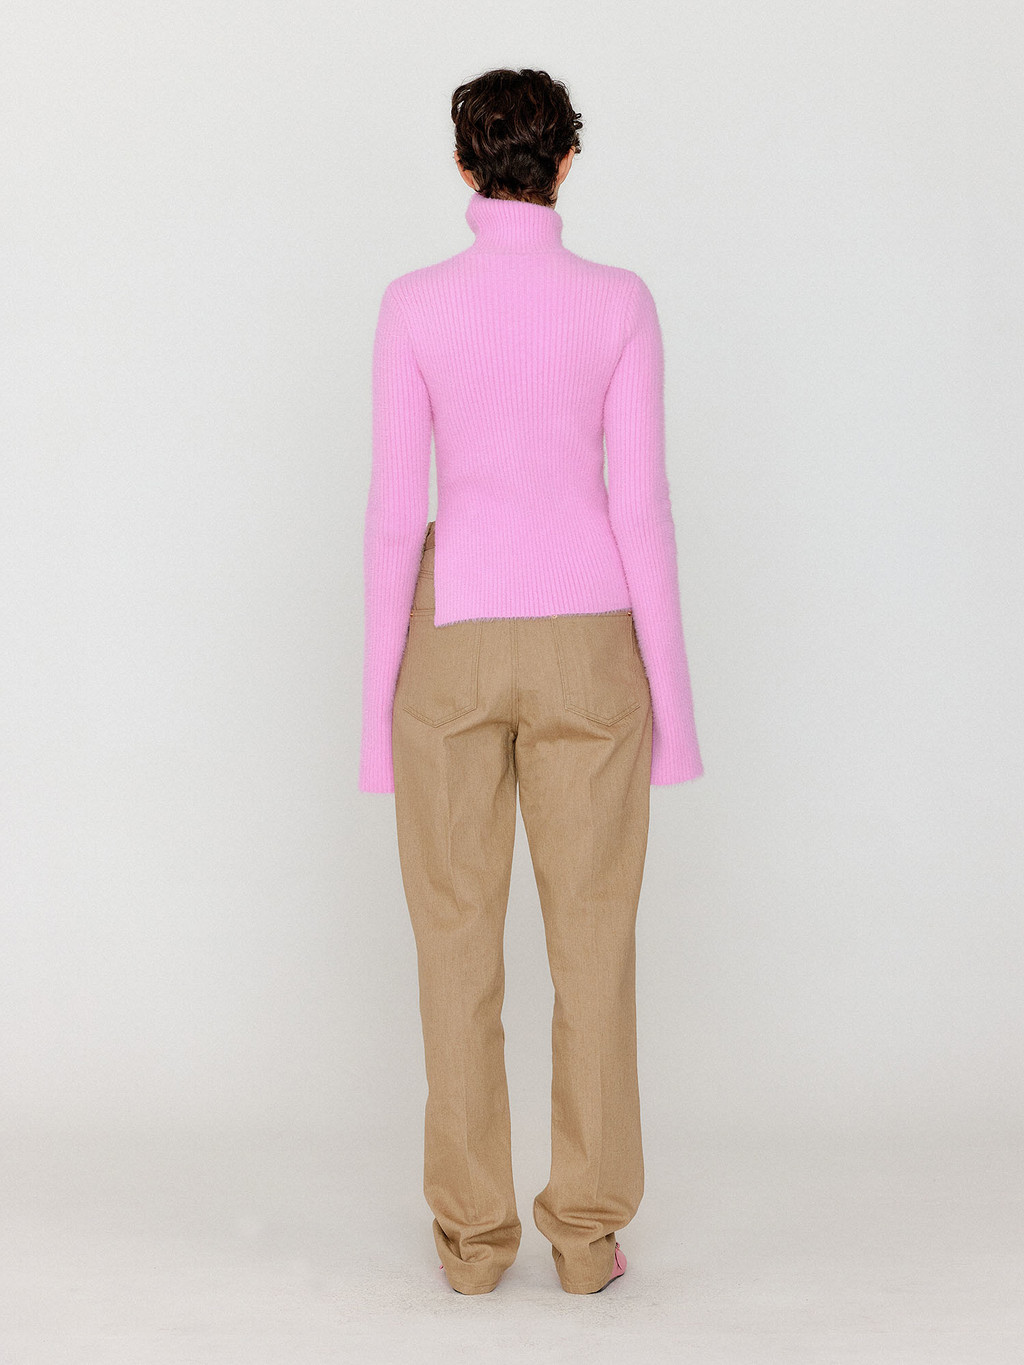 VIX Knit Turtleneck with side slit - Light Pink : EENK SHOP